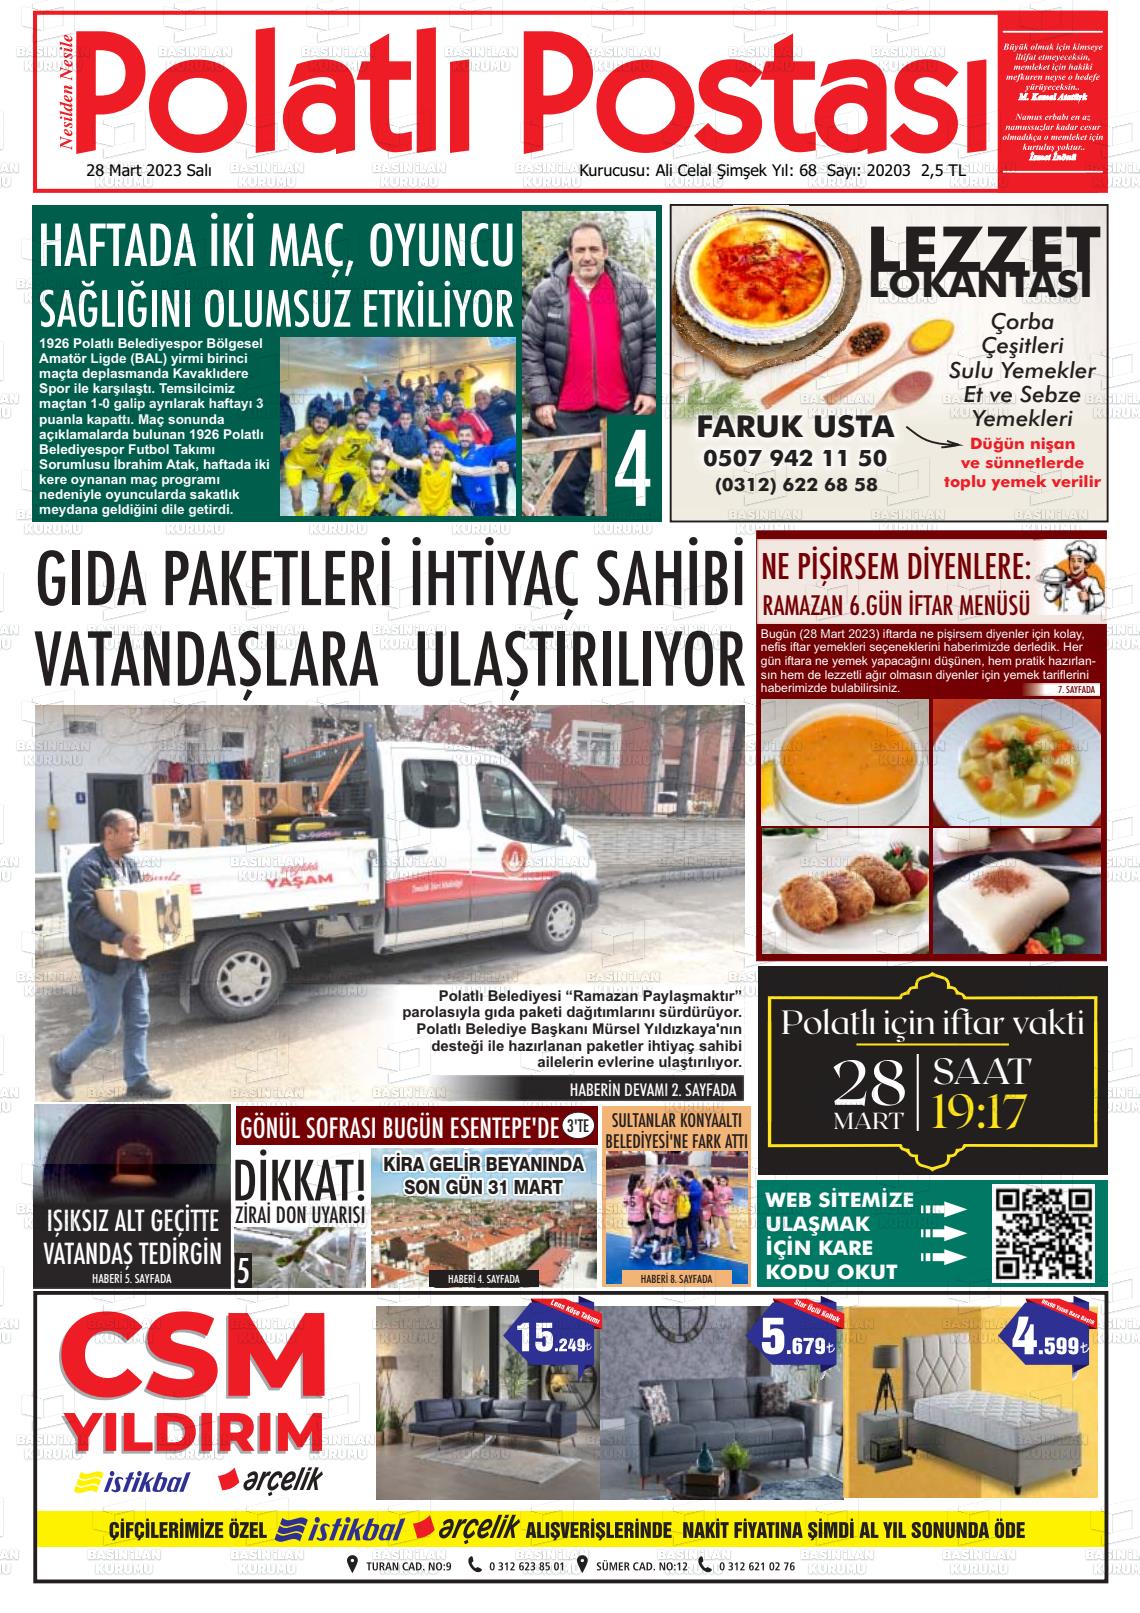 28 Mart 2023 Polatlı Postası Gazete Manşeti